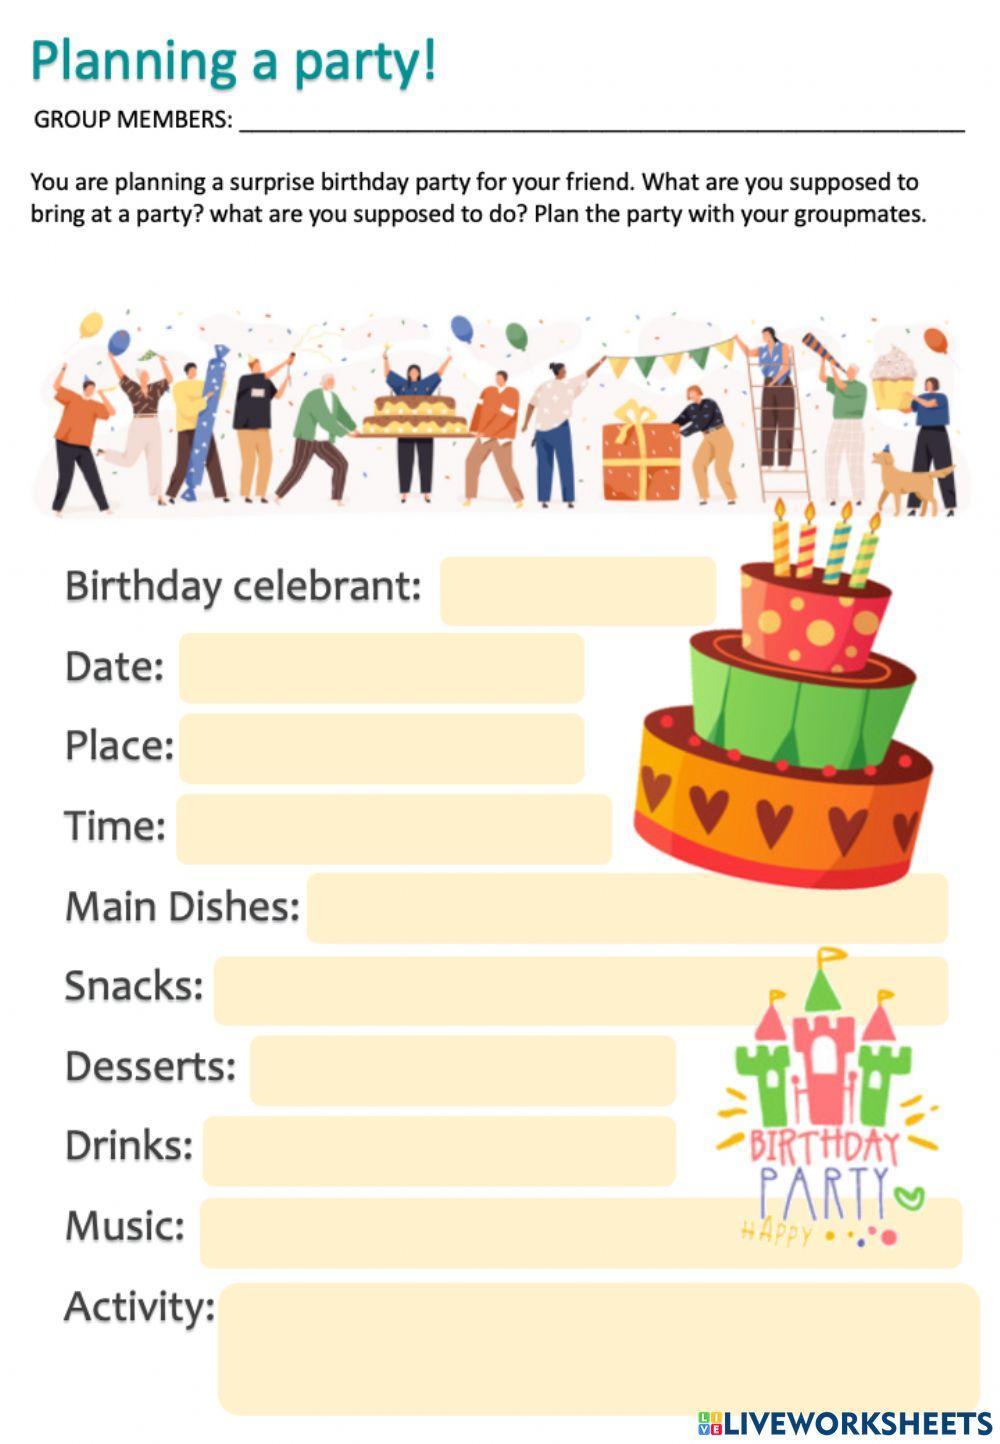 Plan a party